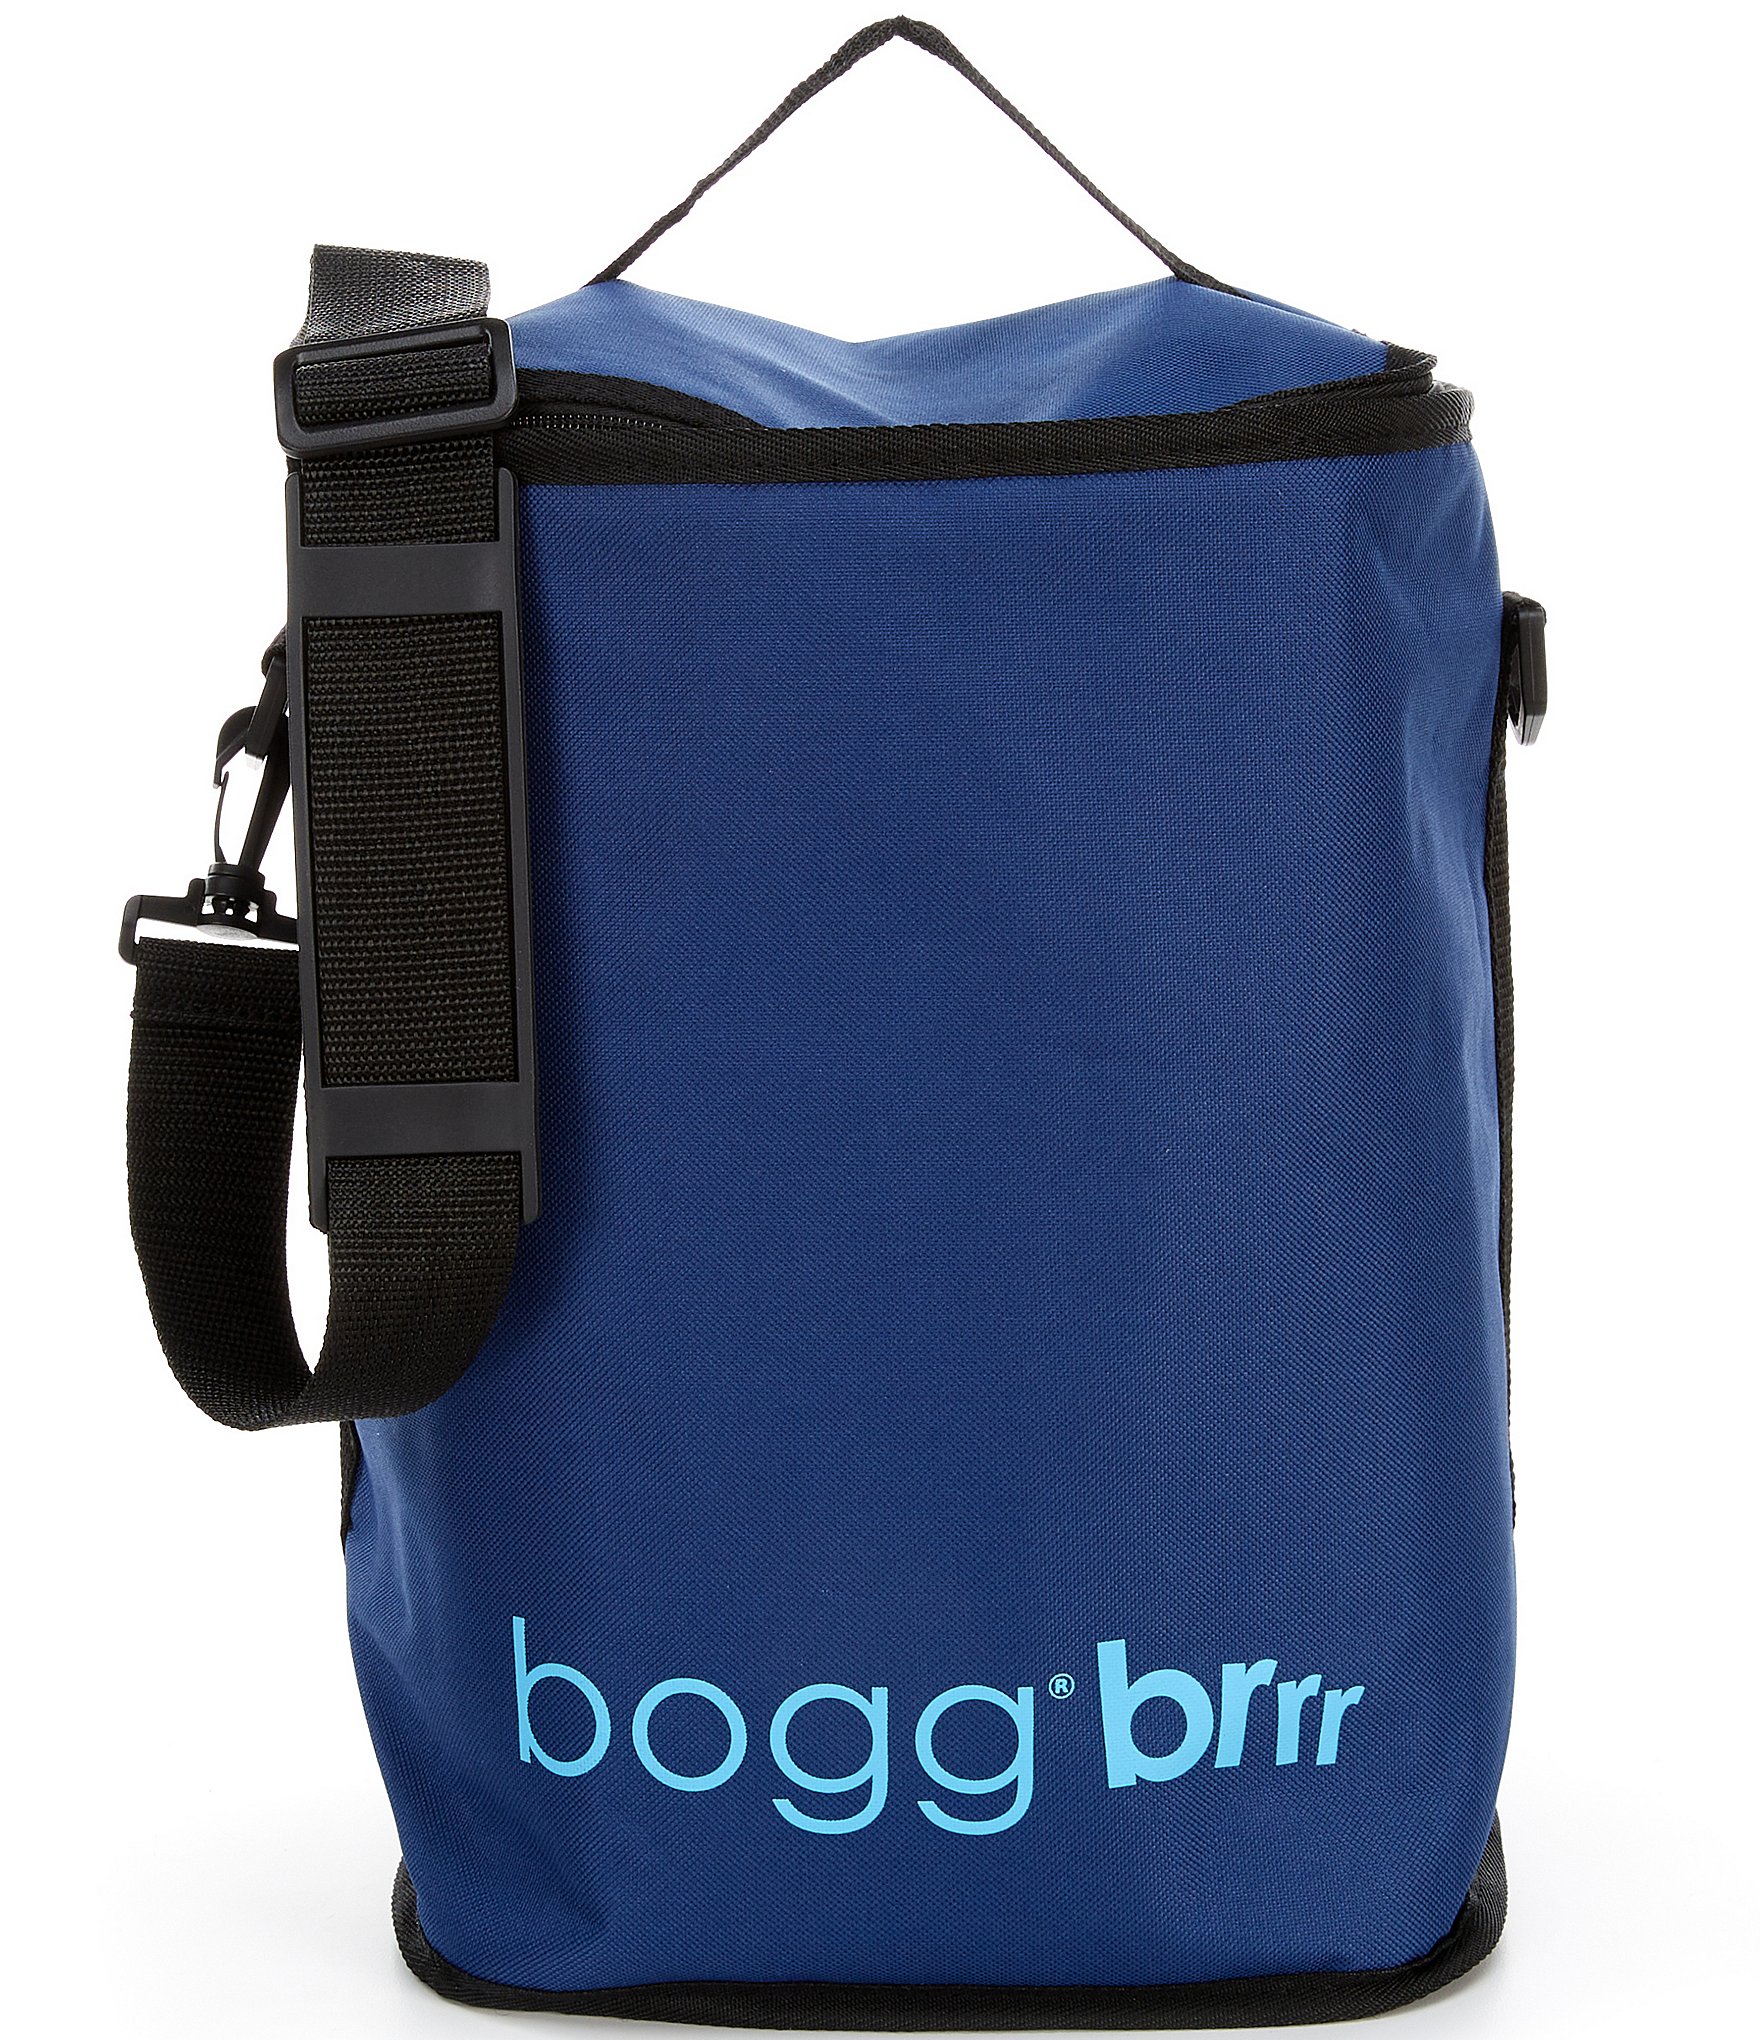 Bogg Bag Brrr Cooler Inserts - Brrr and A Half / Margarita